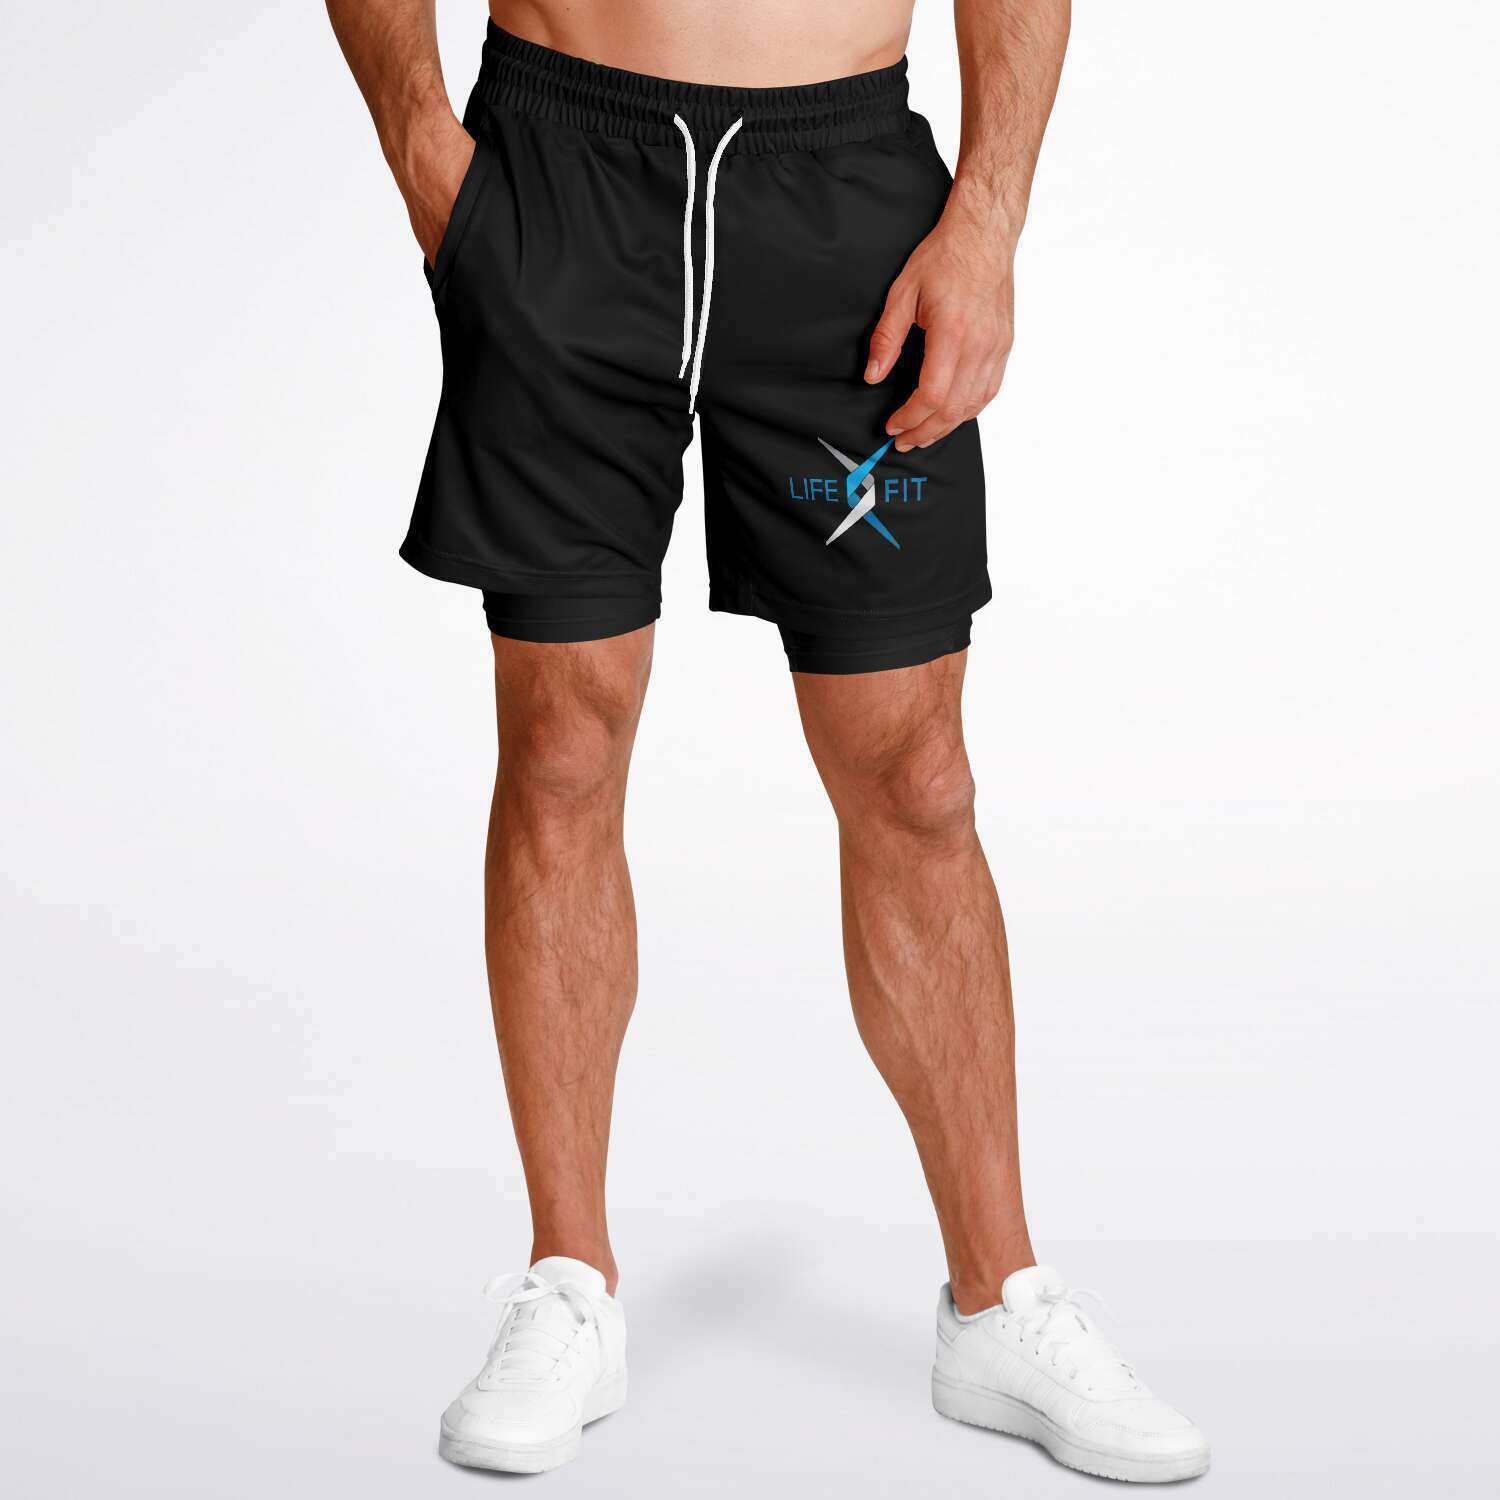 2 in 1 Men's Lifefit Shorts